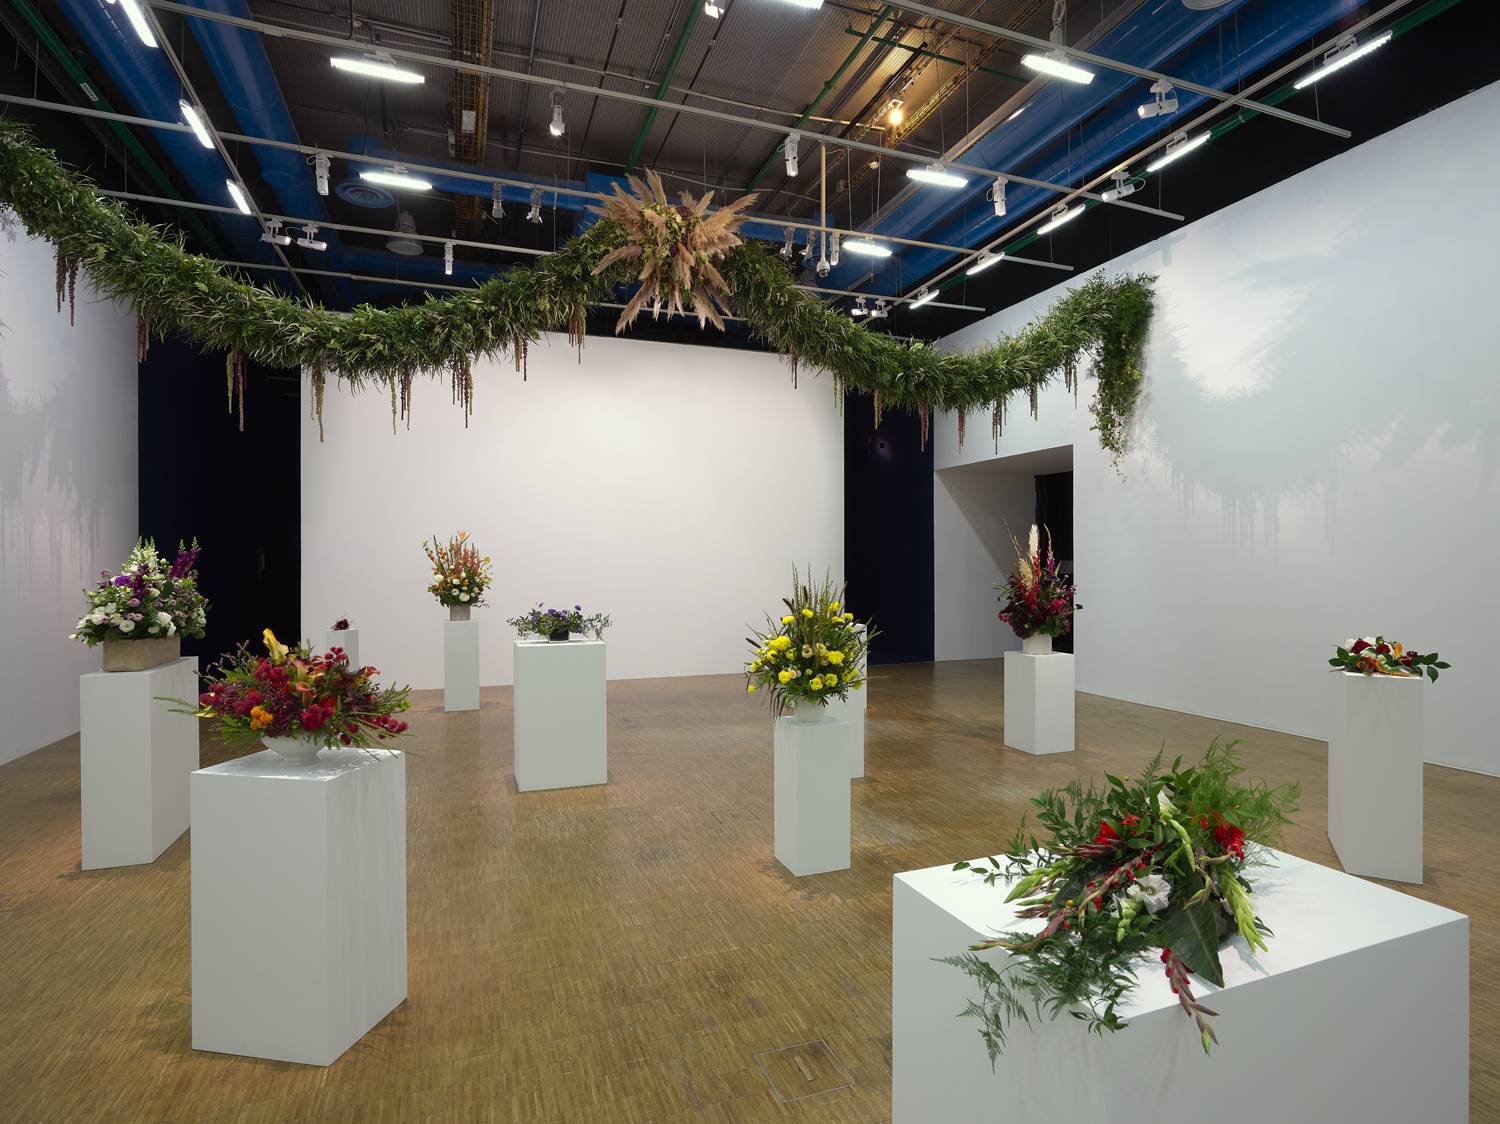 Kapwani Kiwanga, “Flowers for Africa” (2013-en cours). Vue de l’exposition “Prix Marcel Duchamp 2020”, Centre Pompidou, Paris 2020-2021. Copyright ADAGP. Courtesy the artist and galerie Poggi, Paris